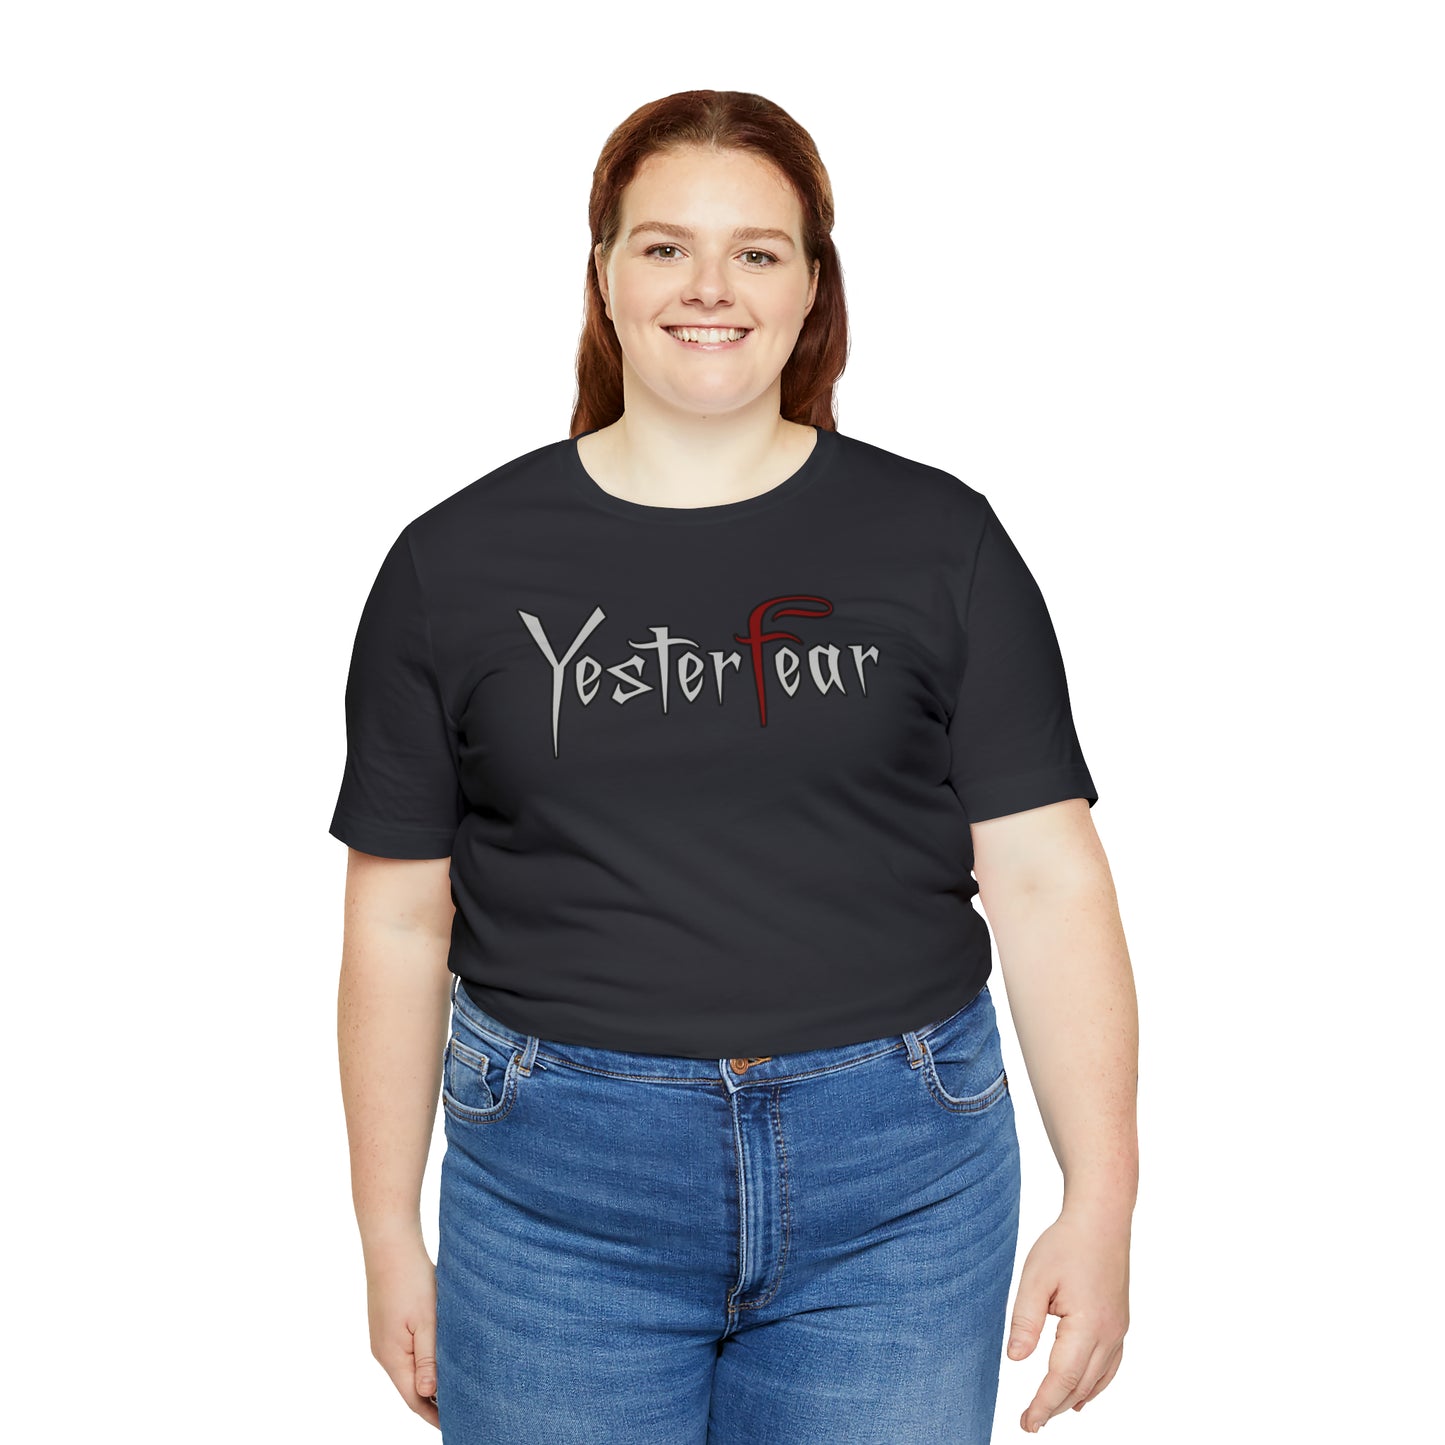 YesterFear - Unisex Jersey Short Sleeve Tee